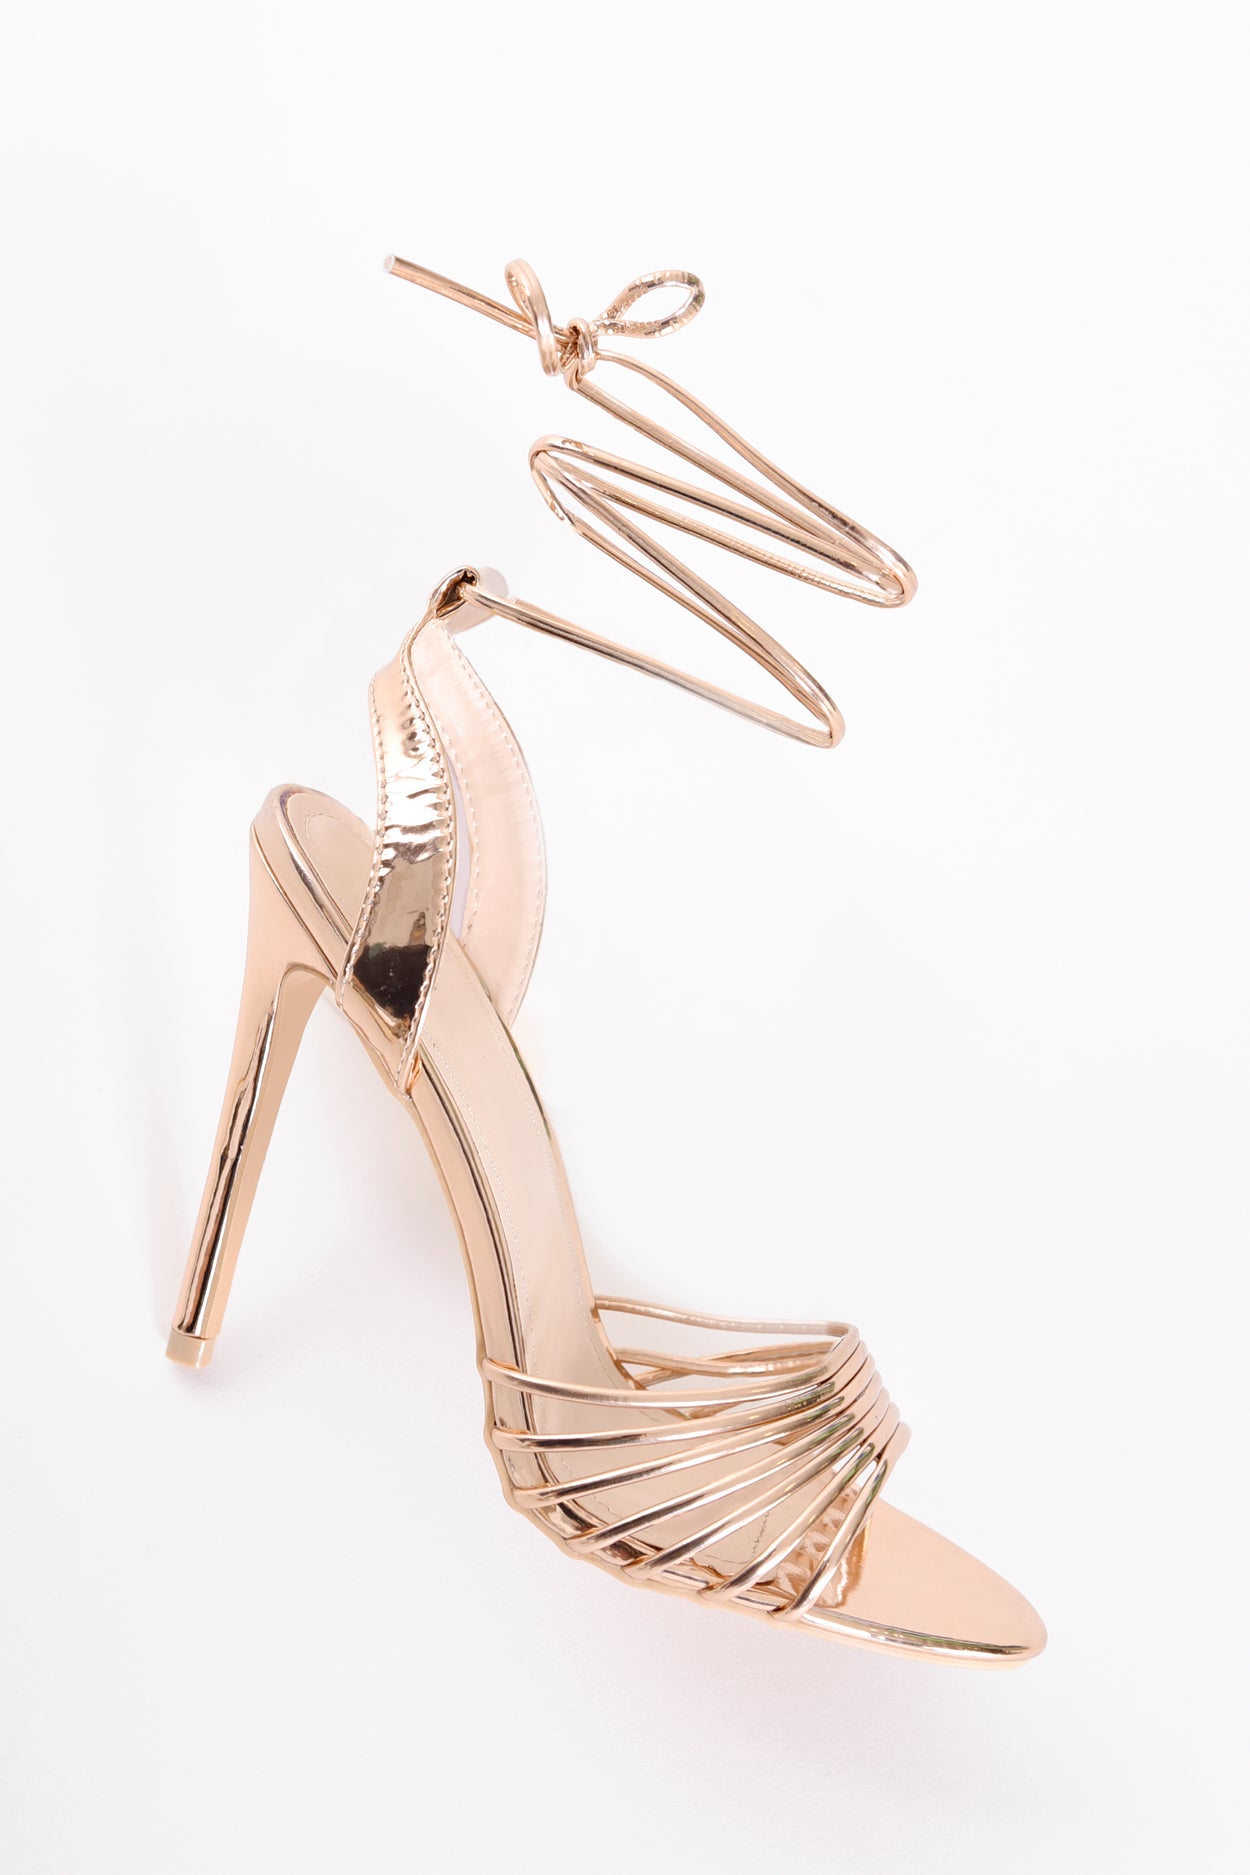 Buy > metallic gold heeled sandals > in stock